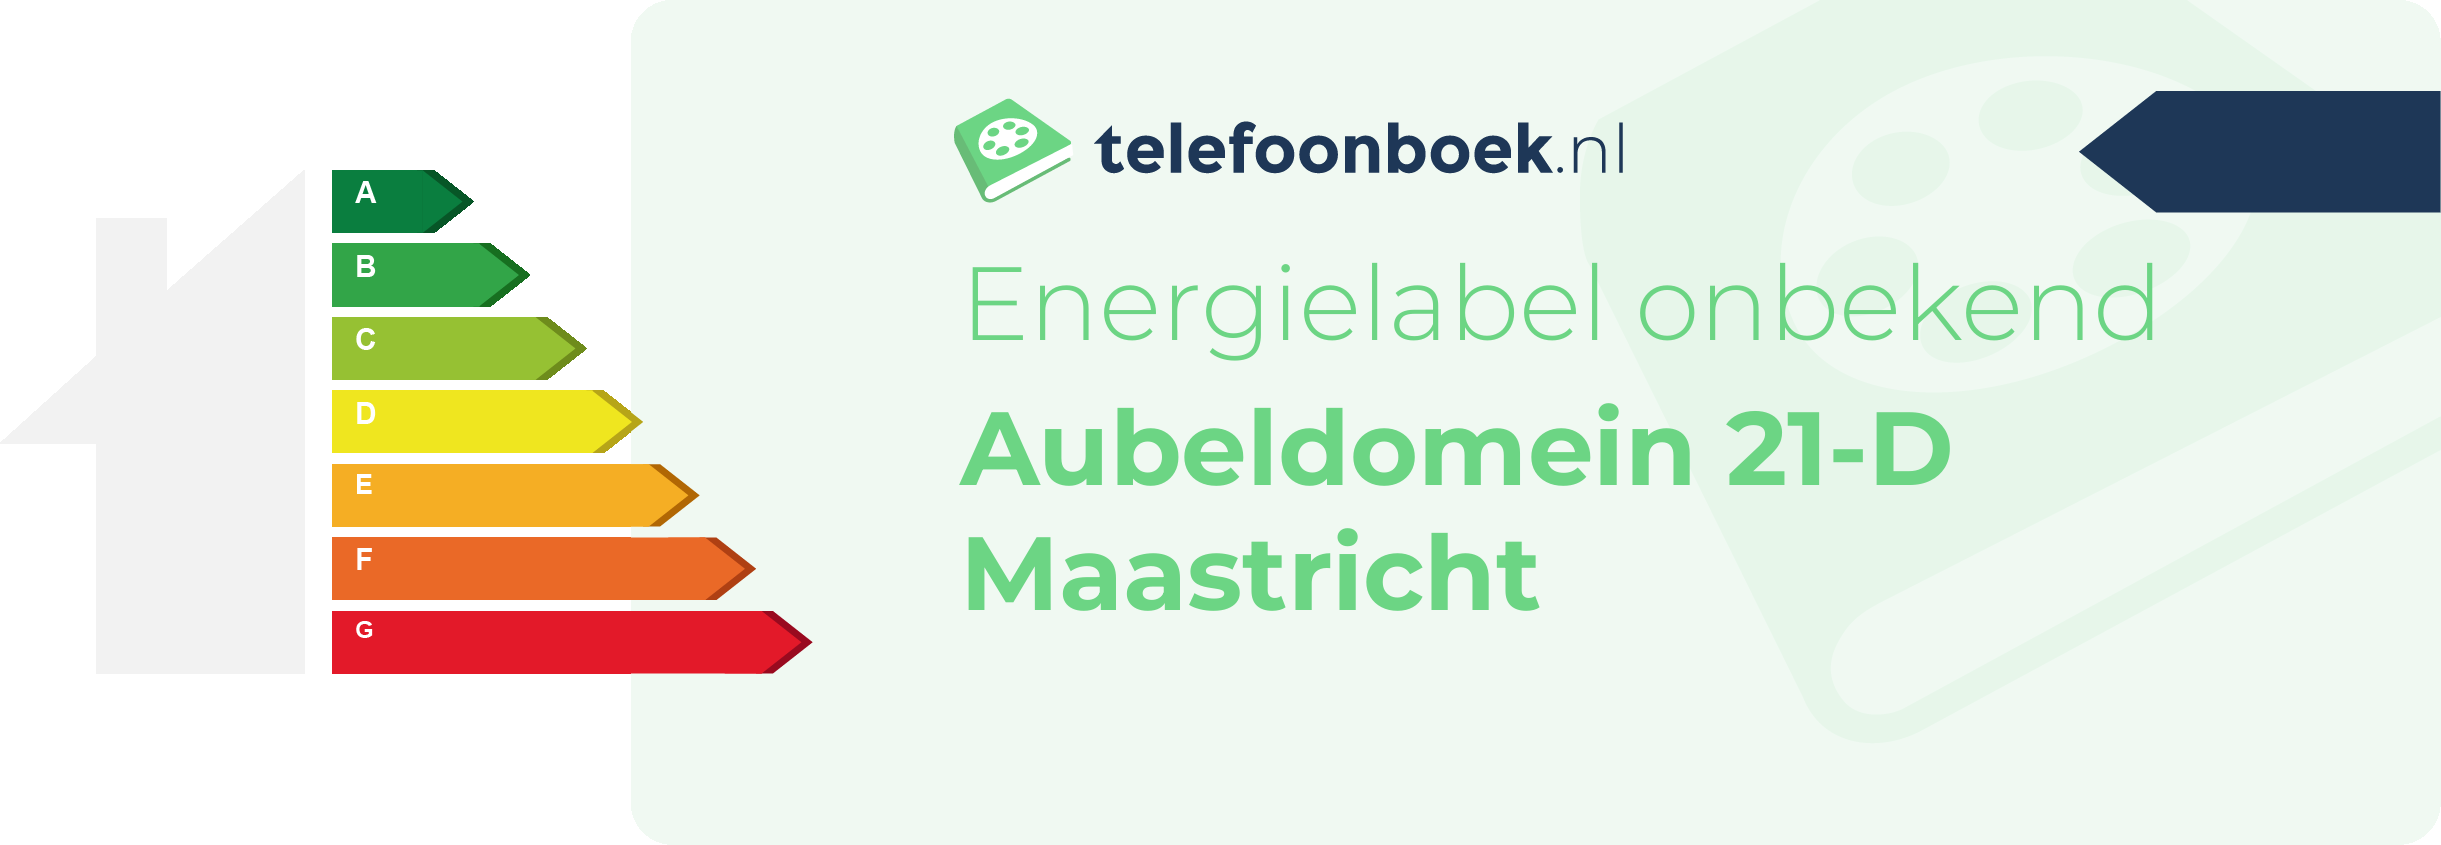 Energielabel Aubeldomein 21-D Maastricht